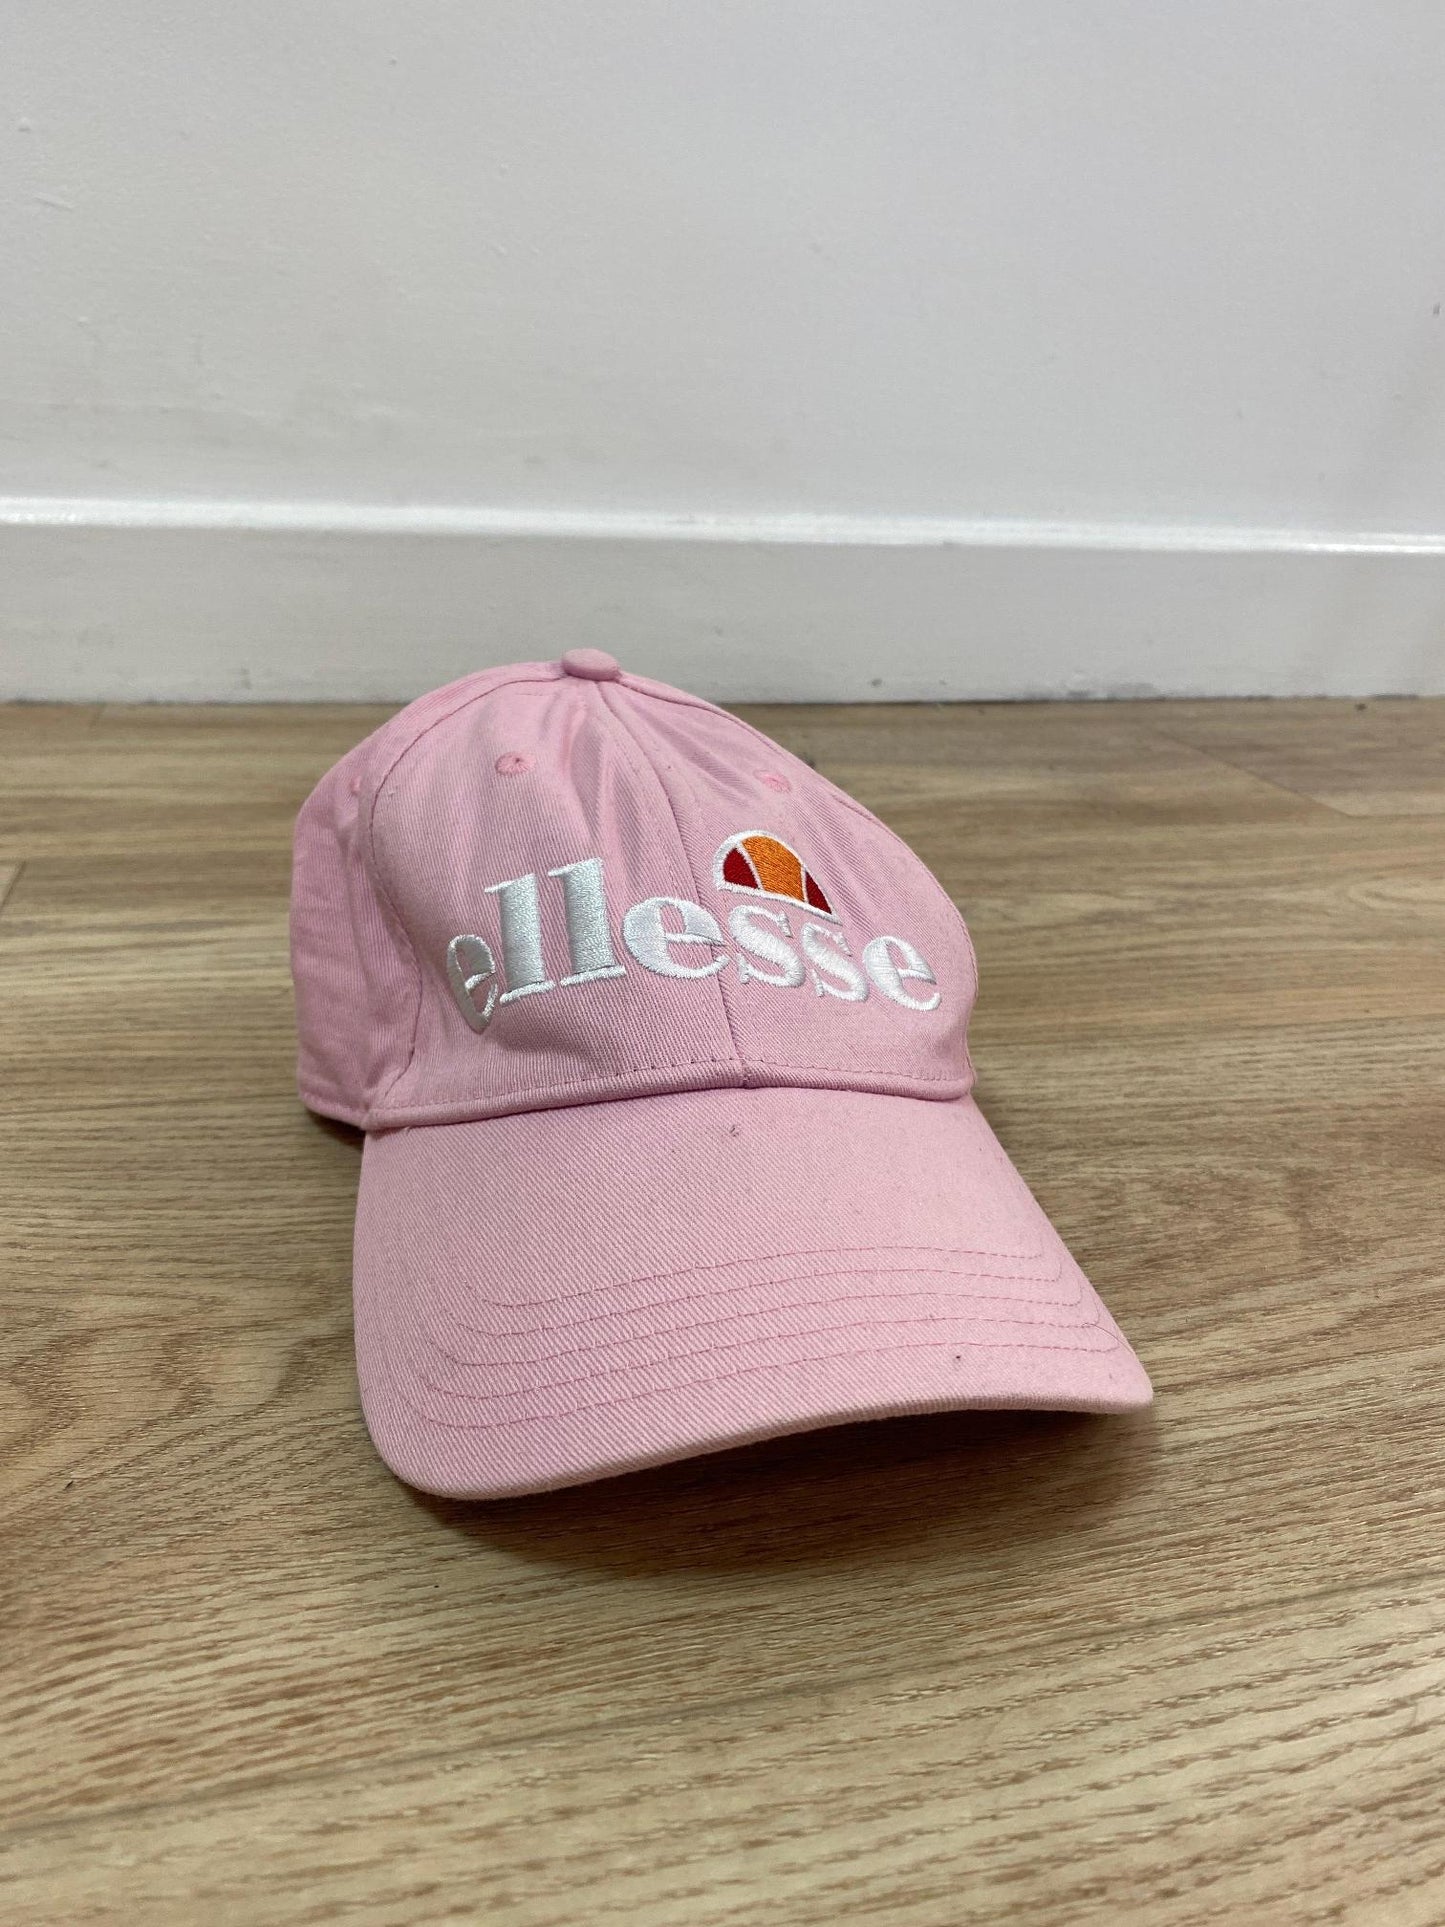 Pink baseball cap, Ellesse - Damaged Item Sale